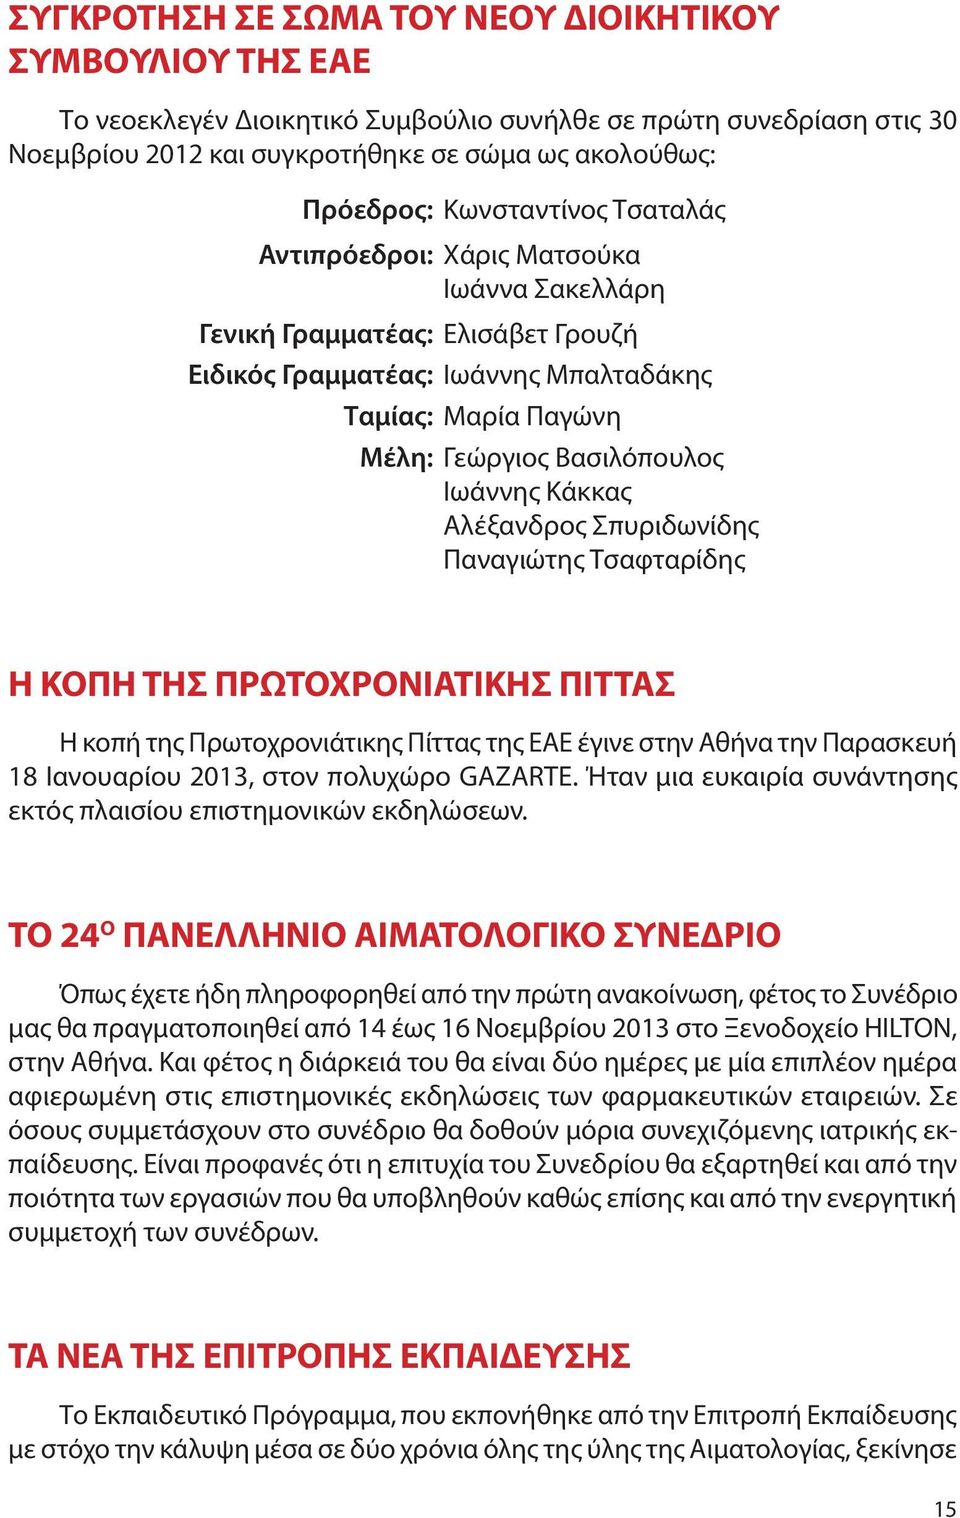 Κάκκας Αλέξανδρος Σπυριδωνίδης Παναγιώτης Τσαφταρίδης Η ΚΟΠΗ ΤΗΣ ΠΡΩΤΟΧΡΟΝΙΑΤΙΚΗΣ ΠΙΤΤΑΣ H κοπή της Πρωτοχρονιάτικης Πίττας της ΕΑΕ έγινε στην Αθήνα την Παρασκευή 18 Ιανουαρίου 2013, στον πολυχώρο